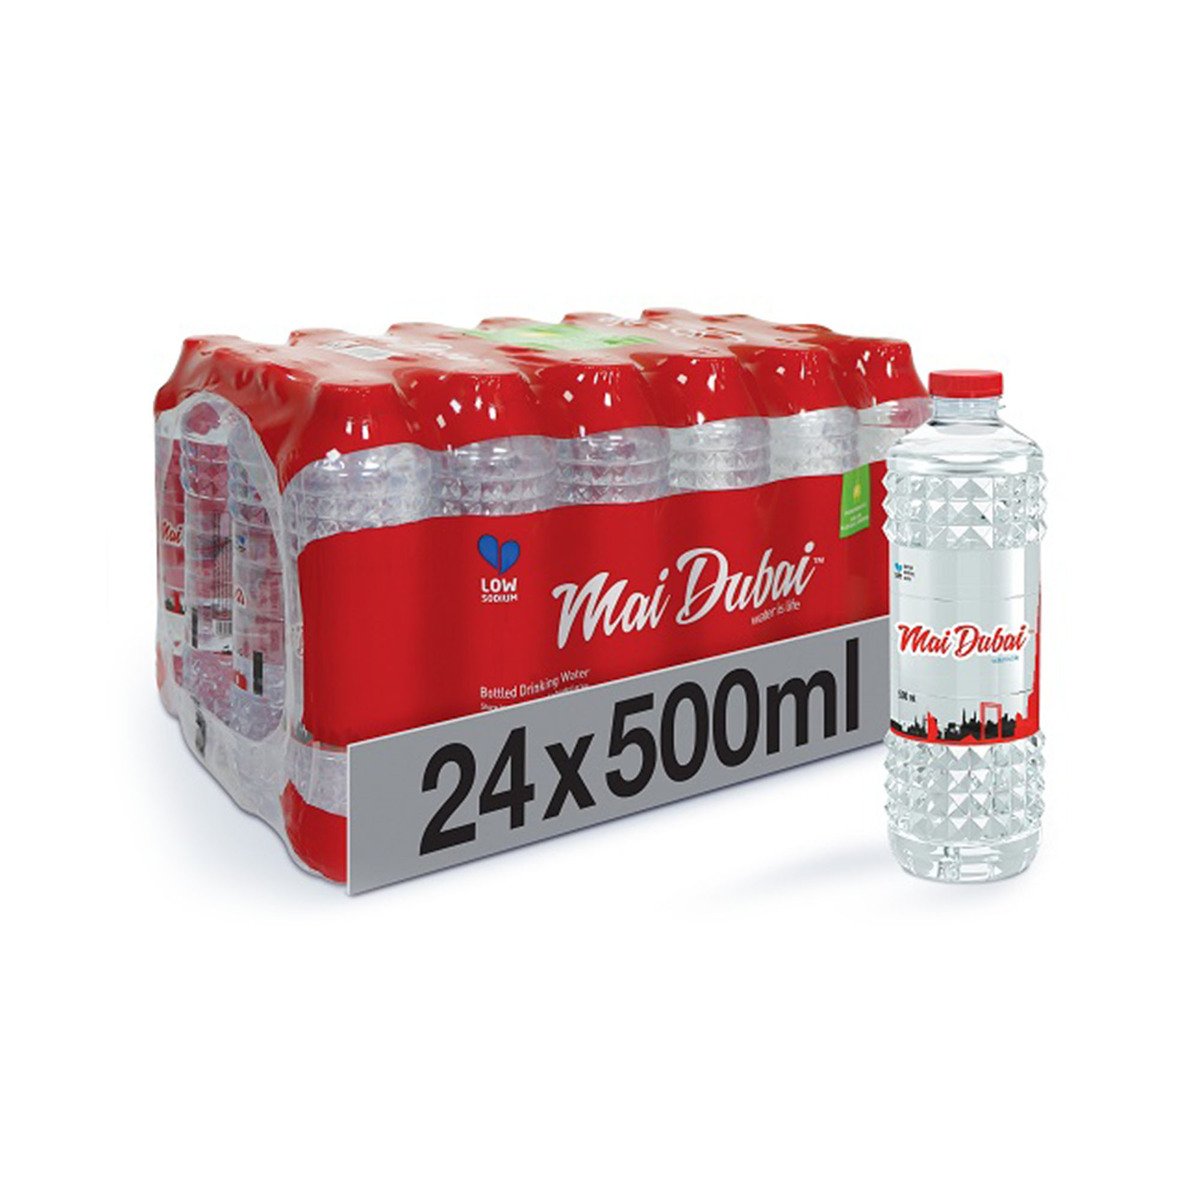 Mai Dubai Bottled Drinking Water 12 x 500 ml